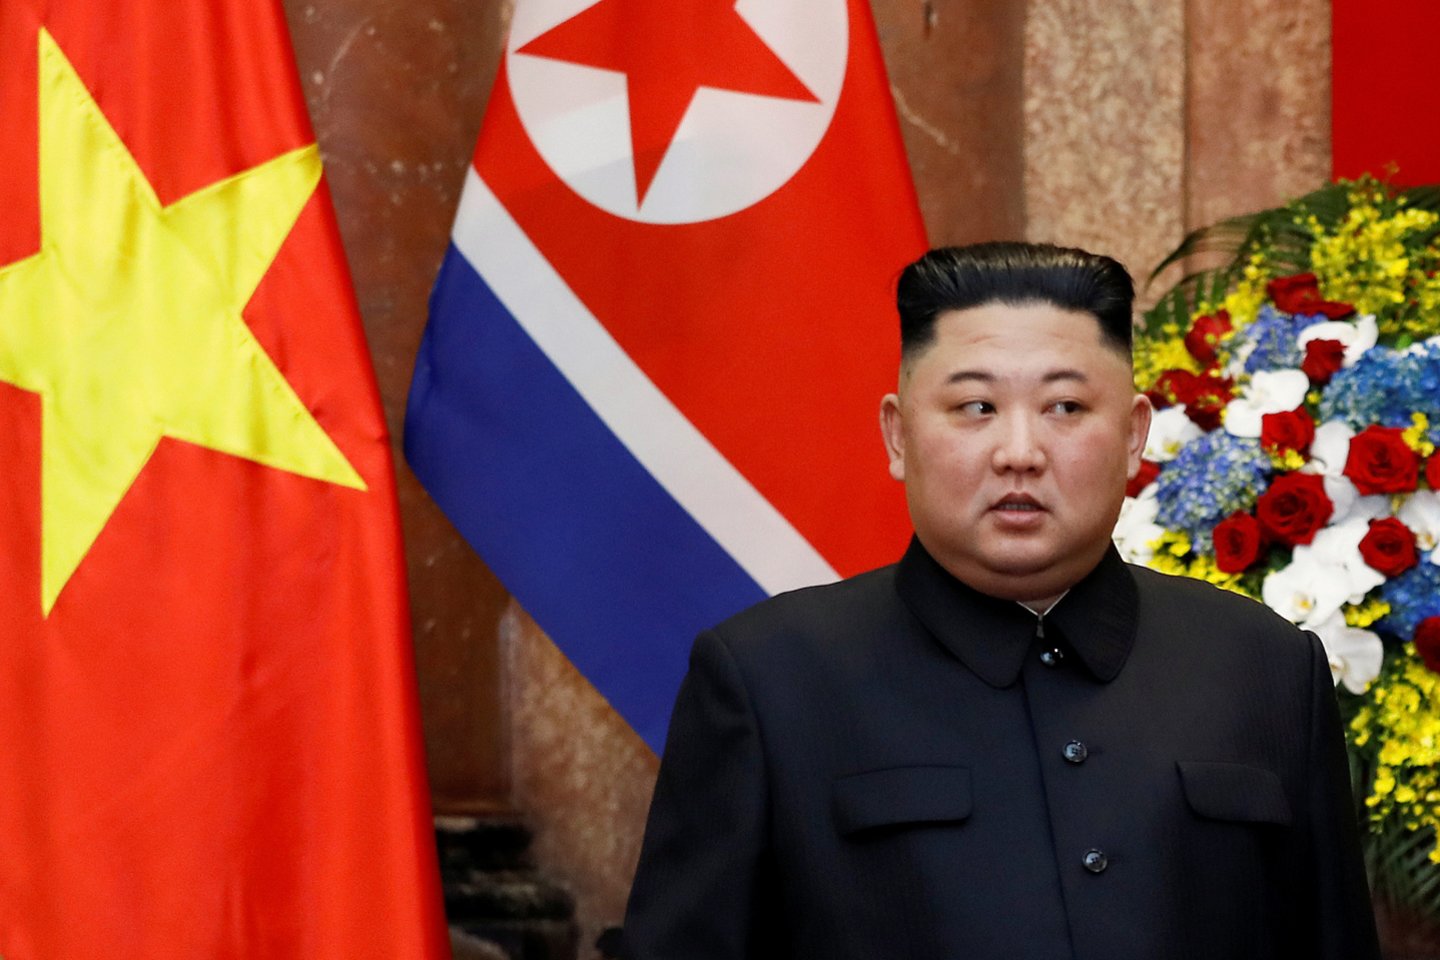 Incidentas įvyko kelios dienos prieš itin svarbų Šiaurės Korėjos lyderio Kim Jong-uno (nuotr.) ir JAV prezidento Donaldo Trumpo susitikimą.<br>Reuters/Scanpix nuotr.